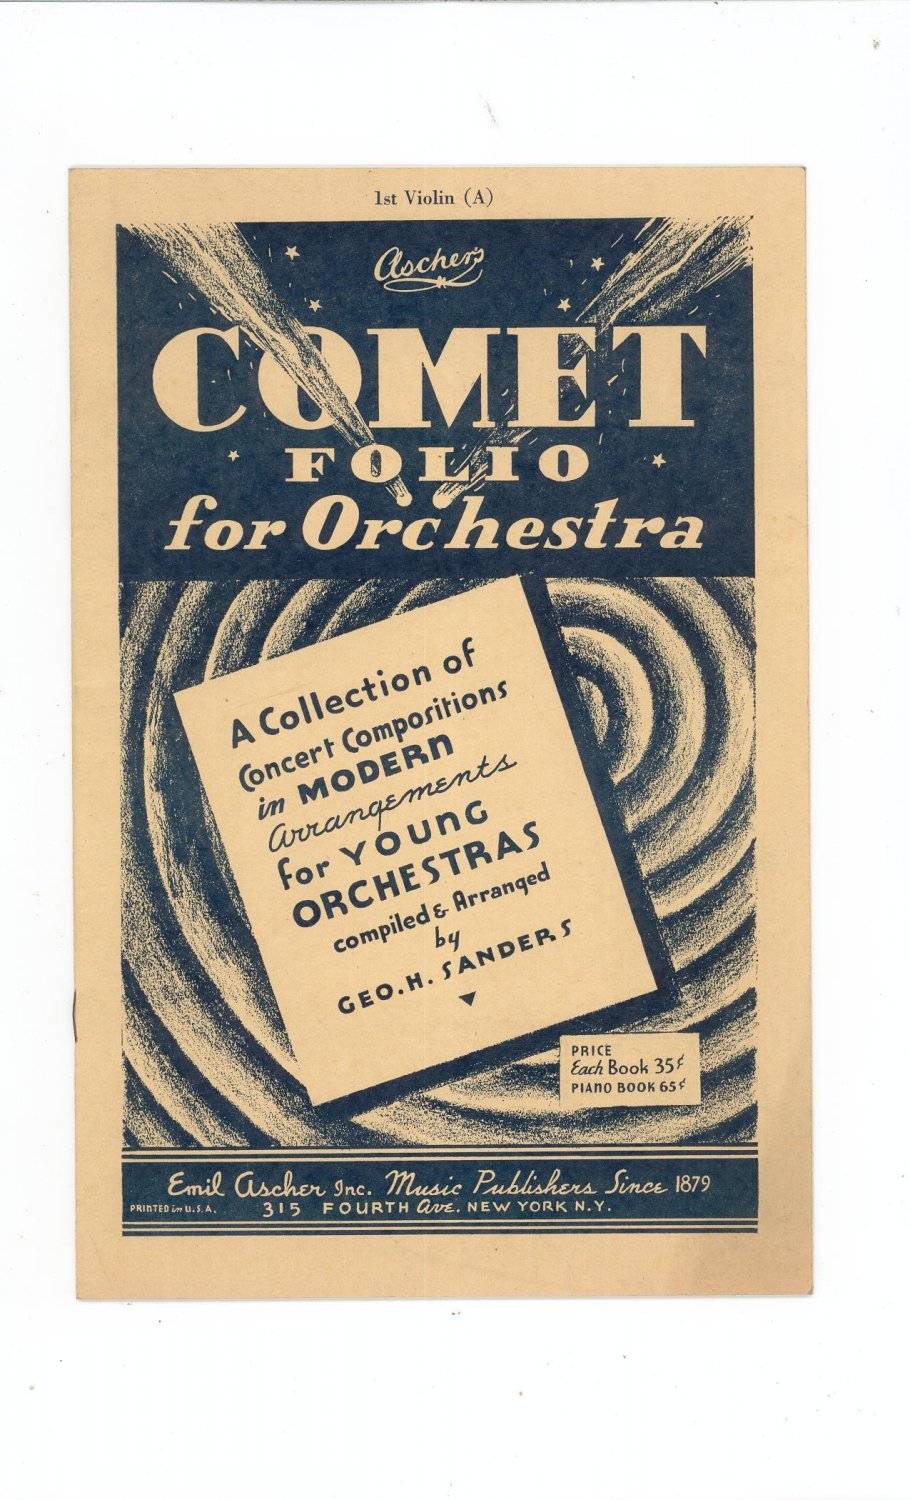 Vintage Comet Folio For Orchestra Violin Geo. H. Sander Emil Ascher Inc.